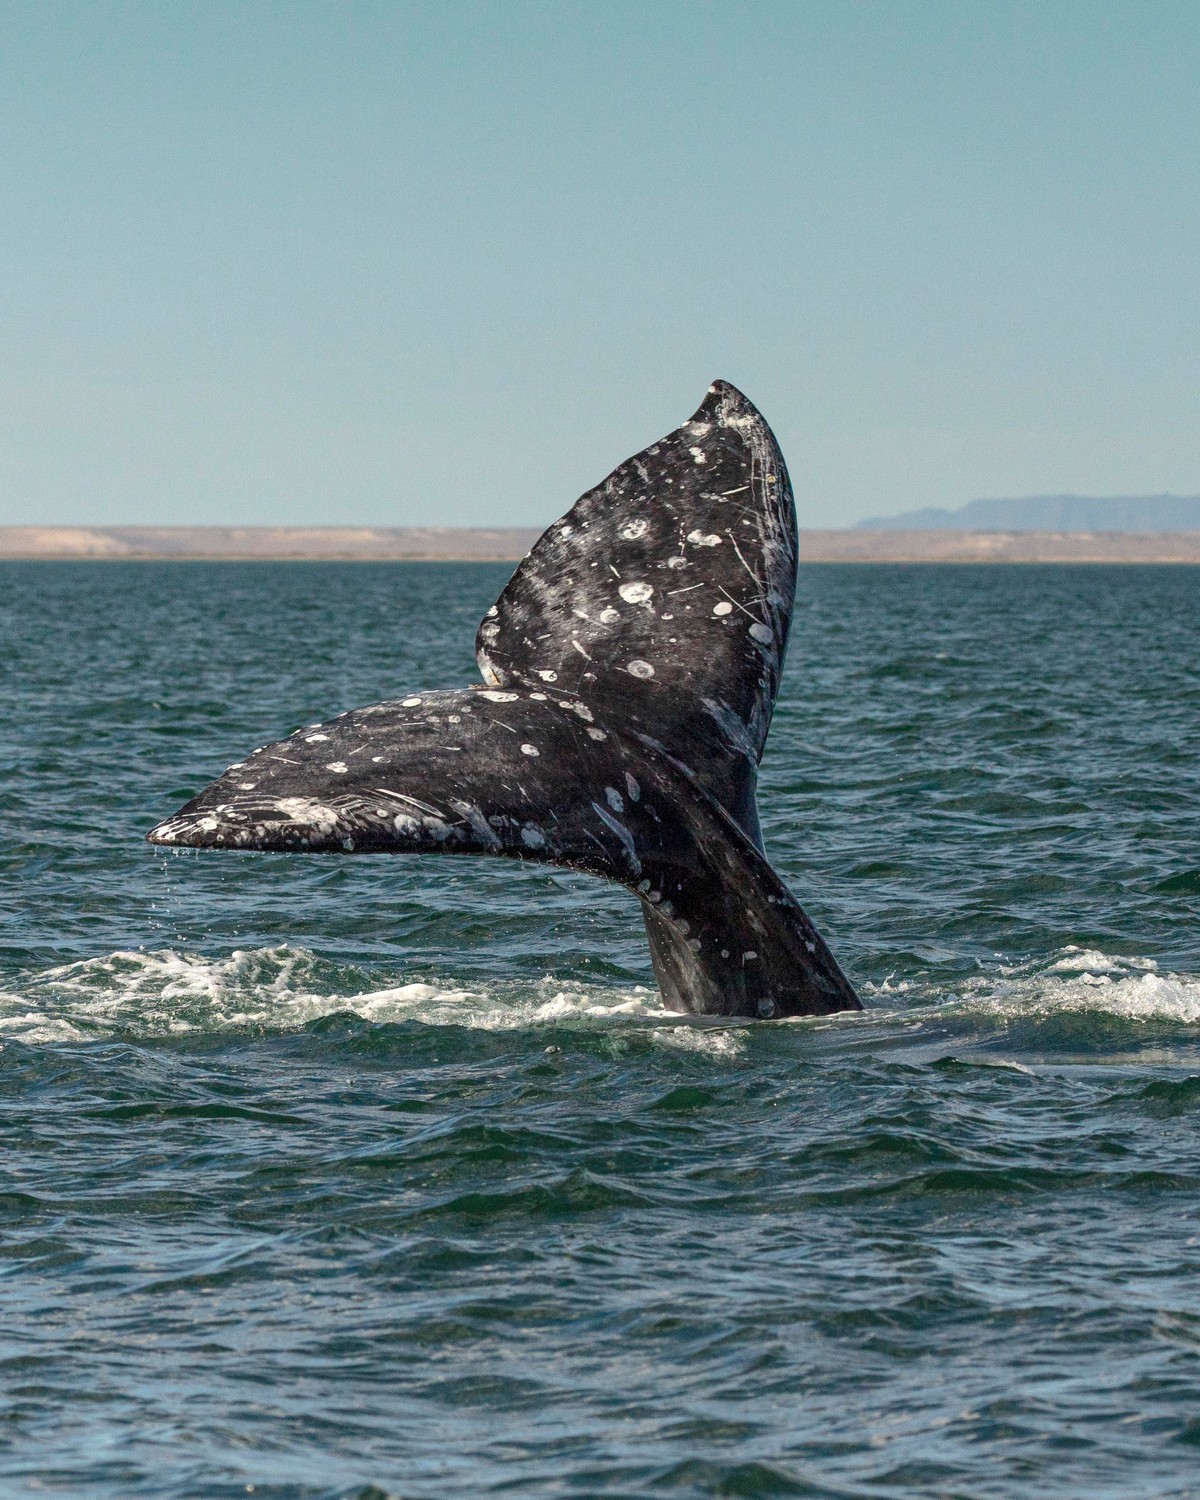 Наблюдатели смотрели в другую сторону, когда кит вынырнул из воды